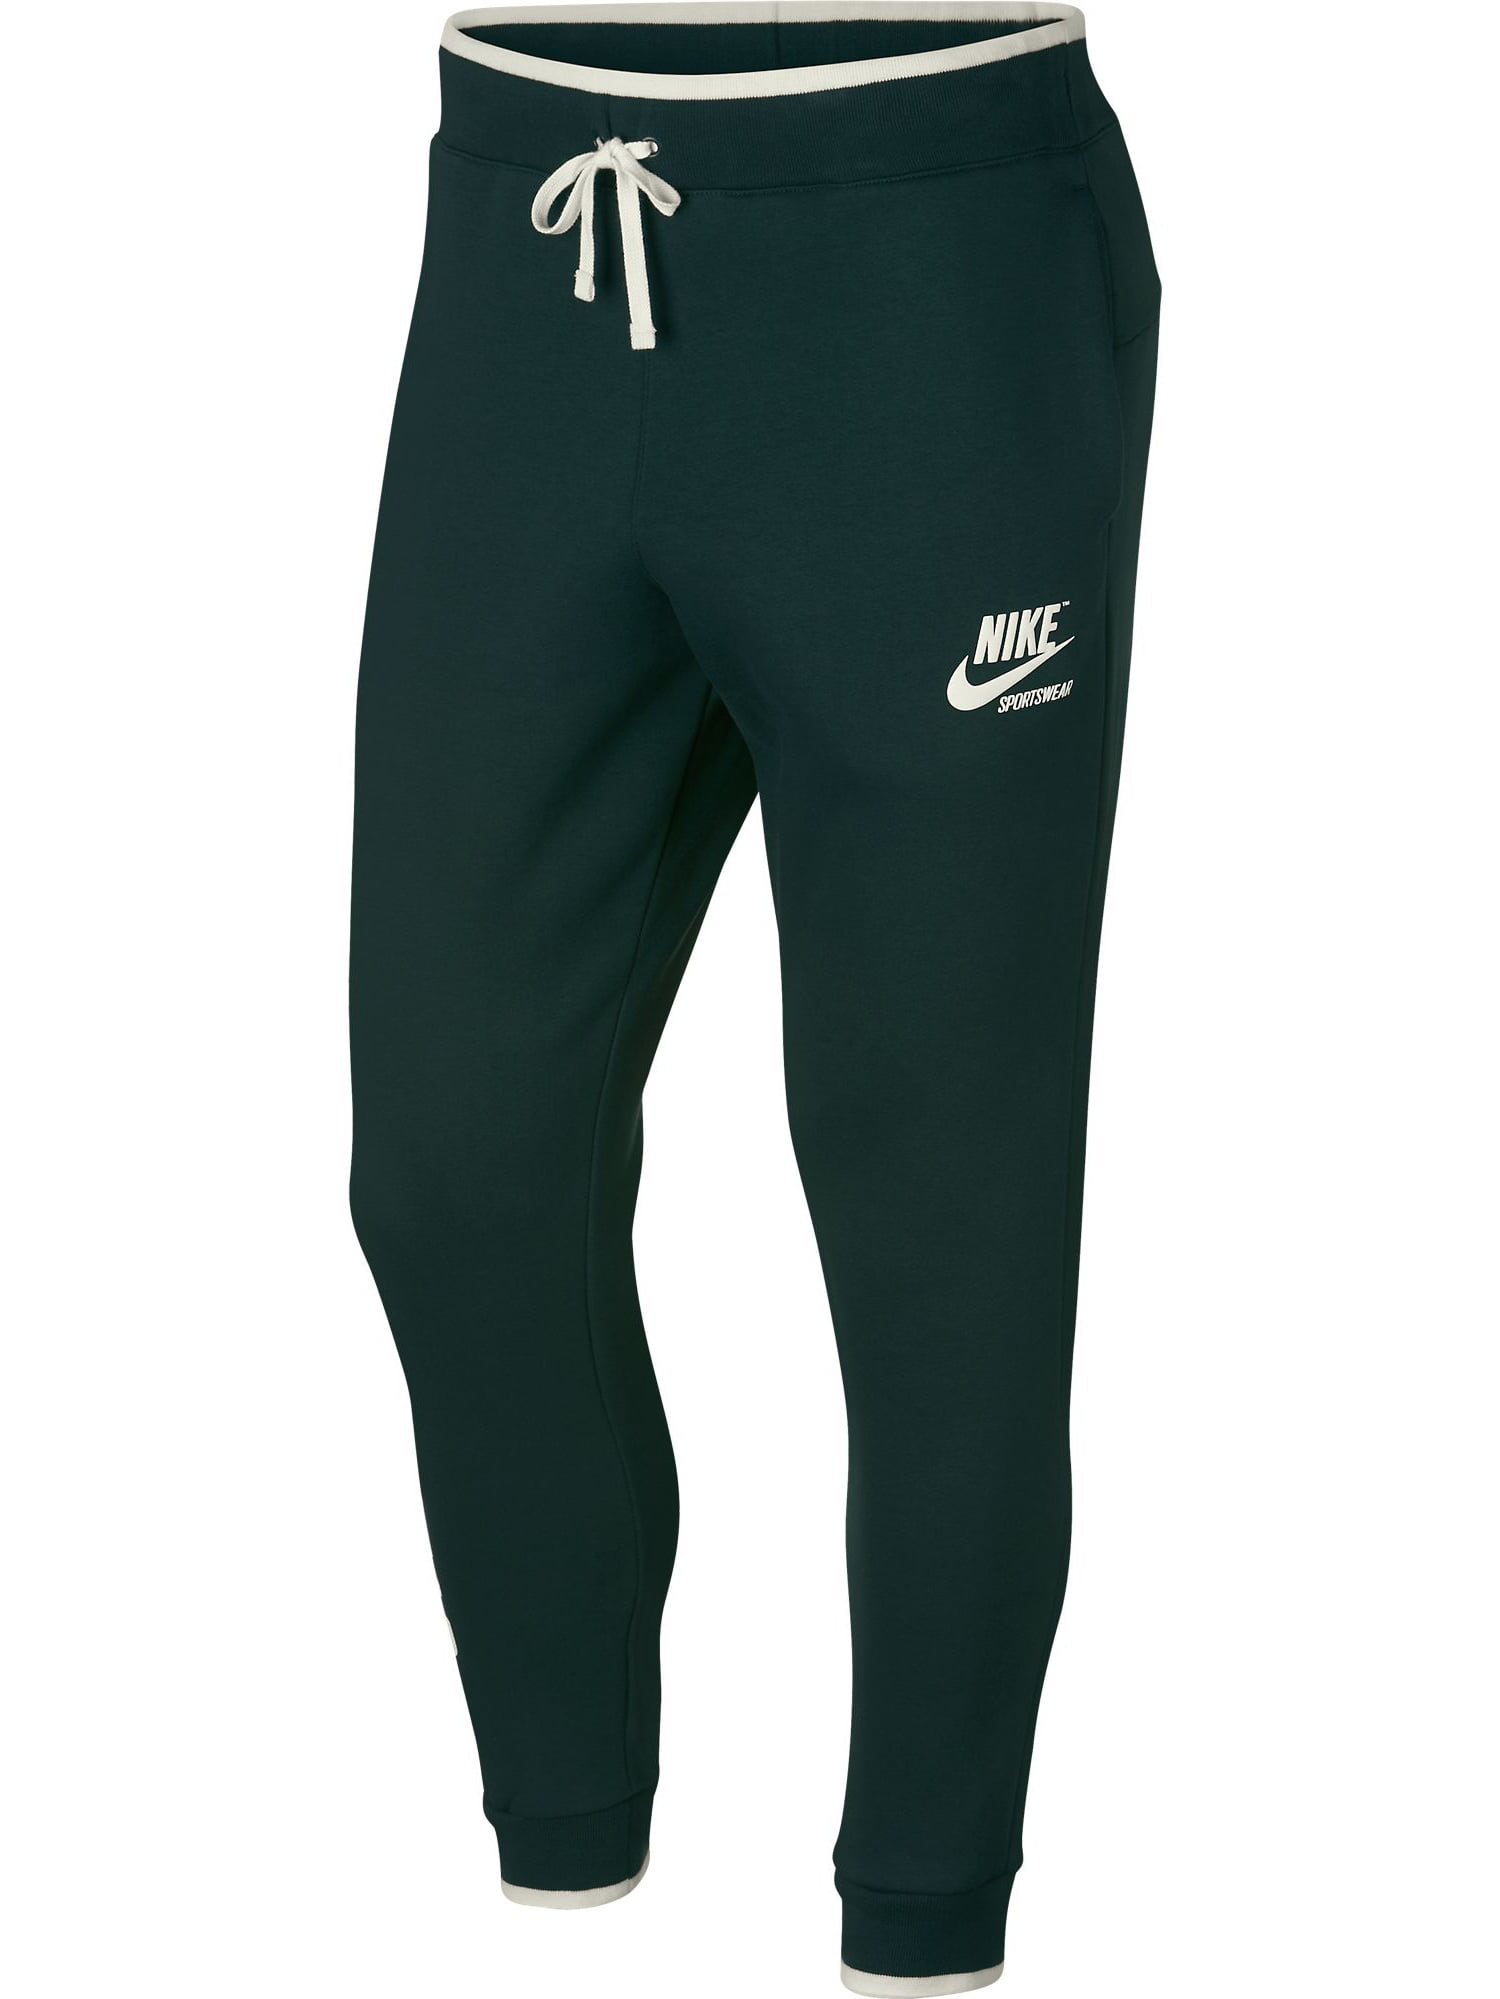 Nike Sportswear Fleece Men's Jogger Green/White 923484-332 - Walmart.com